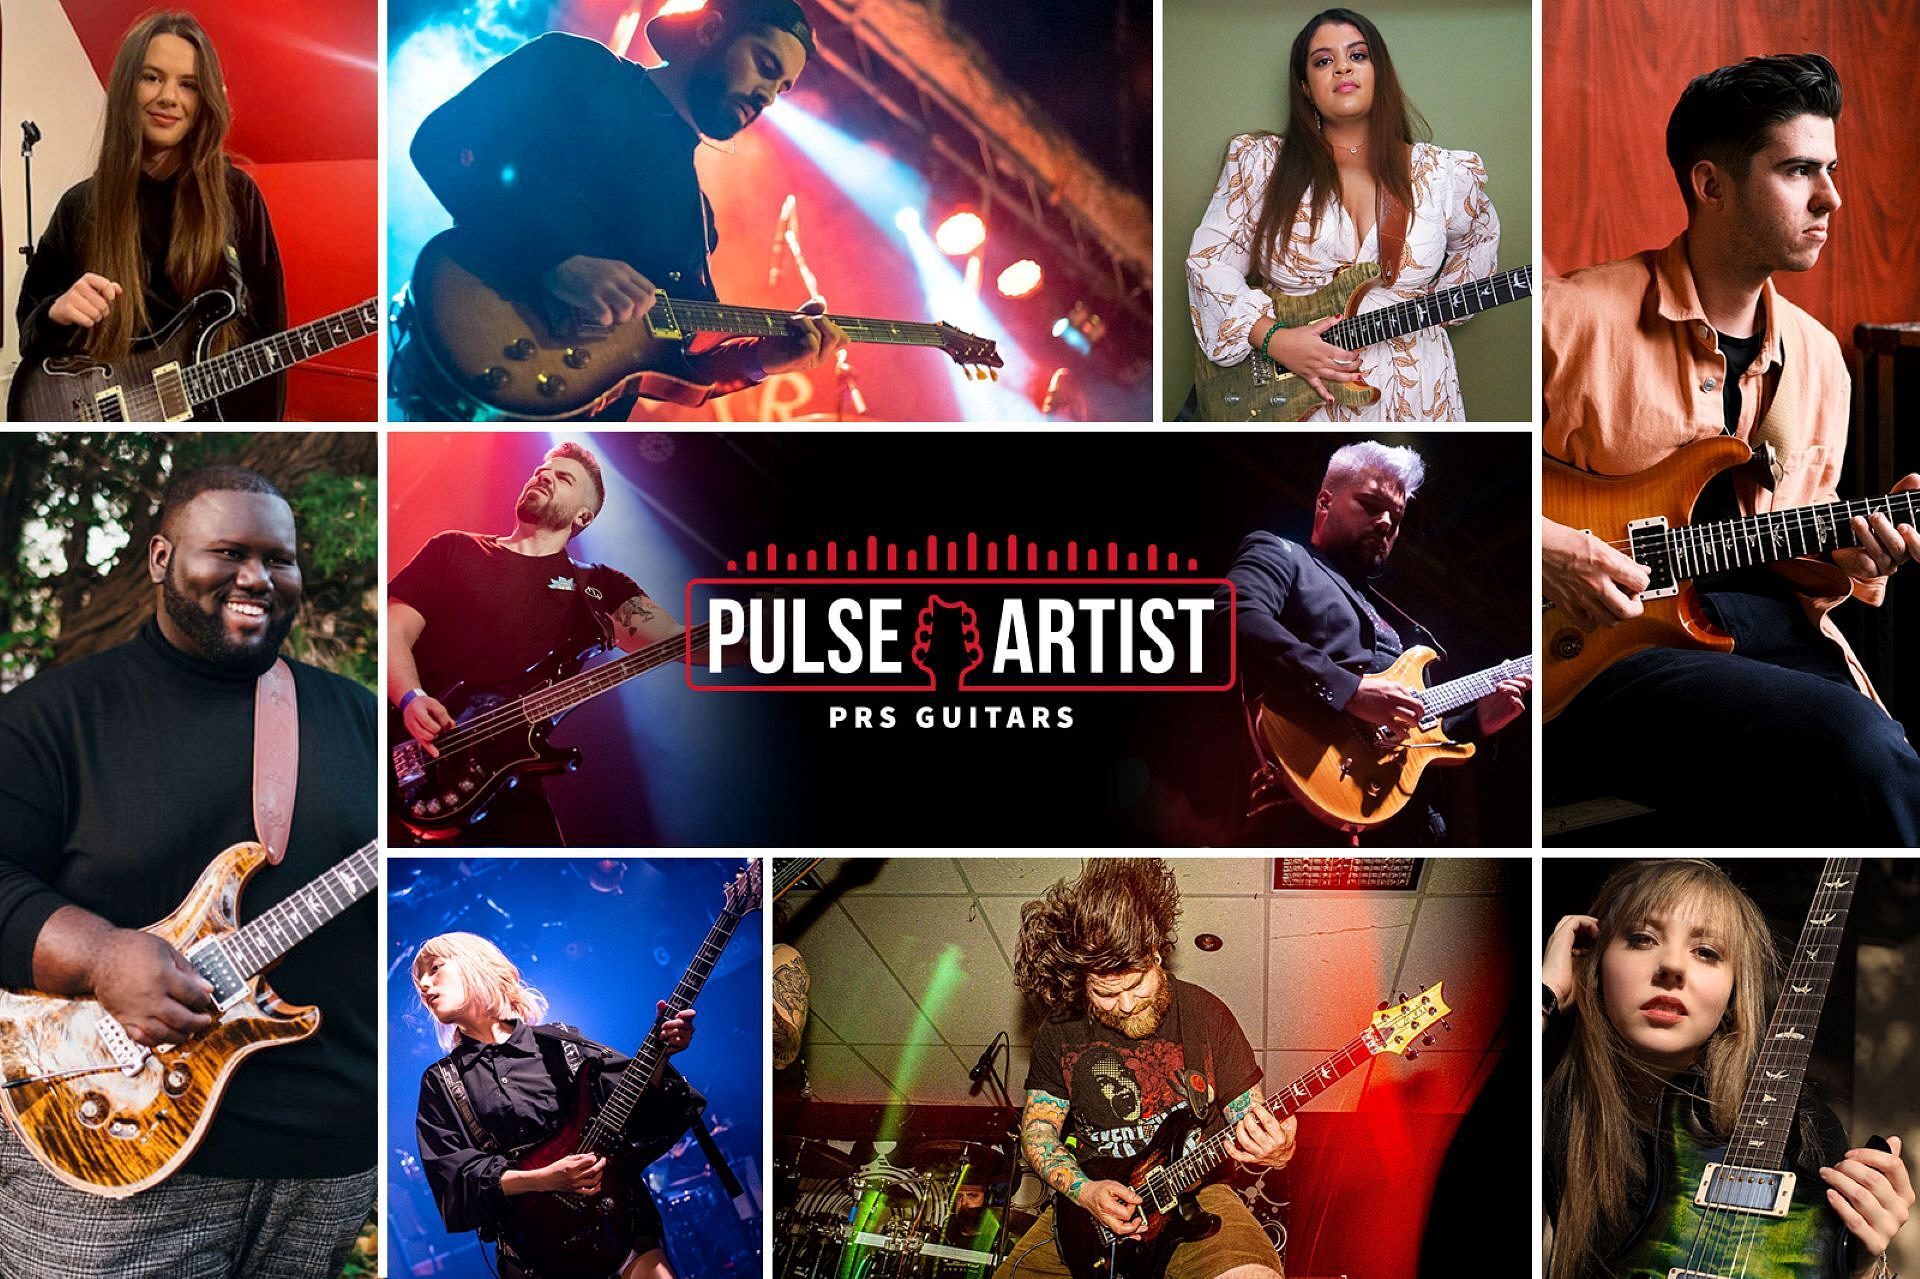 PRS Pulse Artist Class of 2022 News Update!